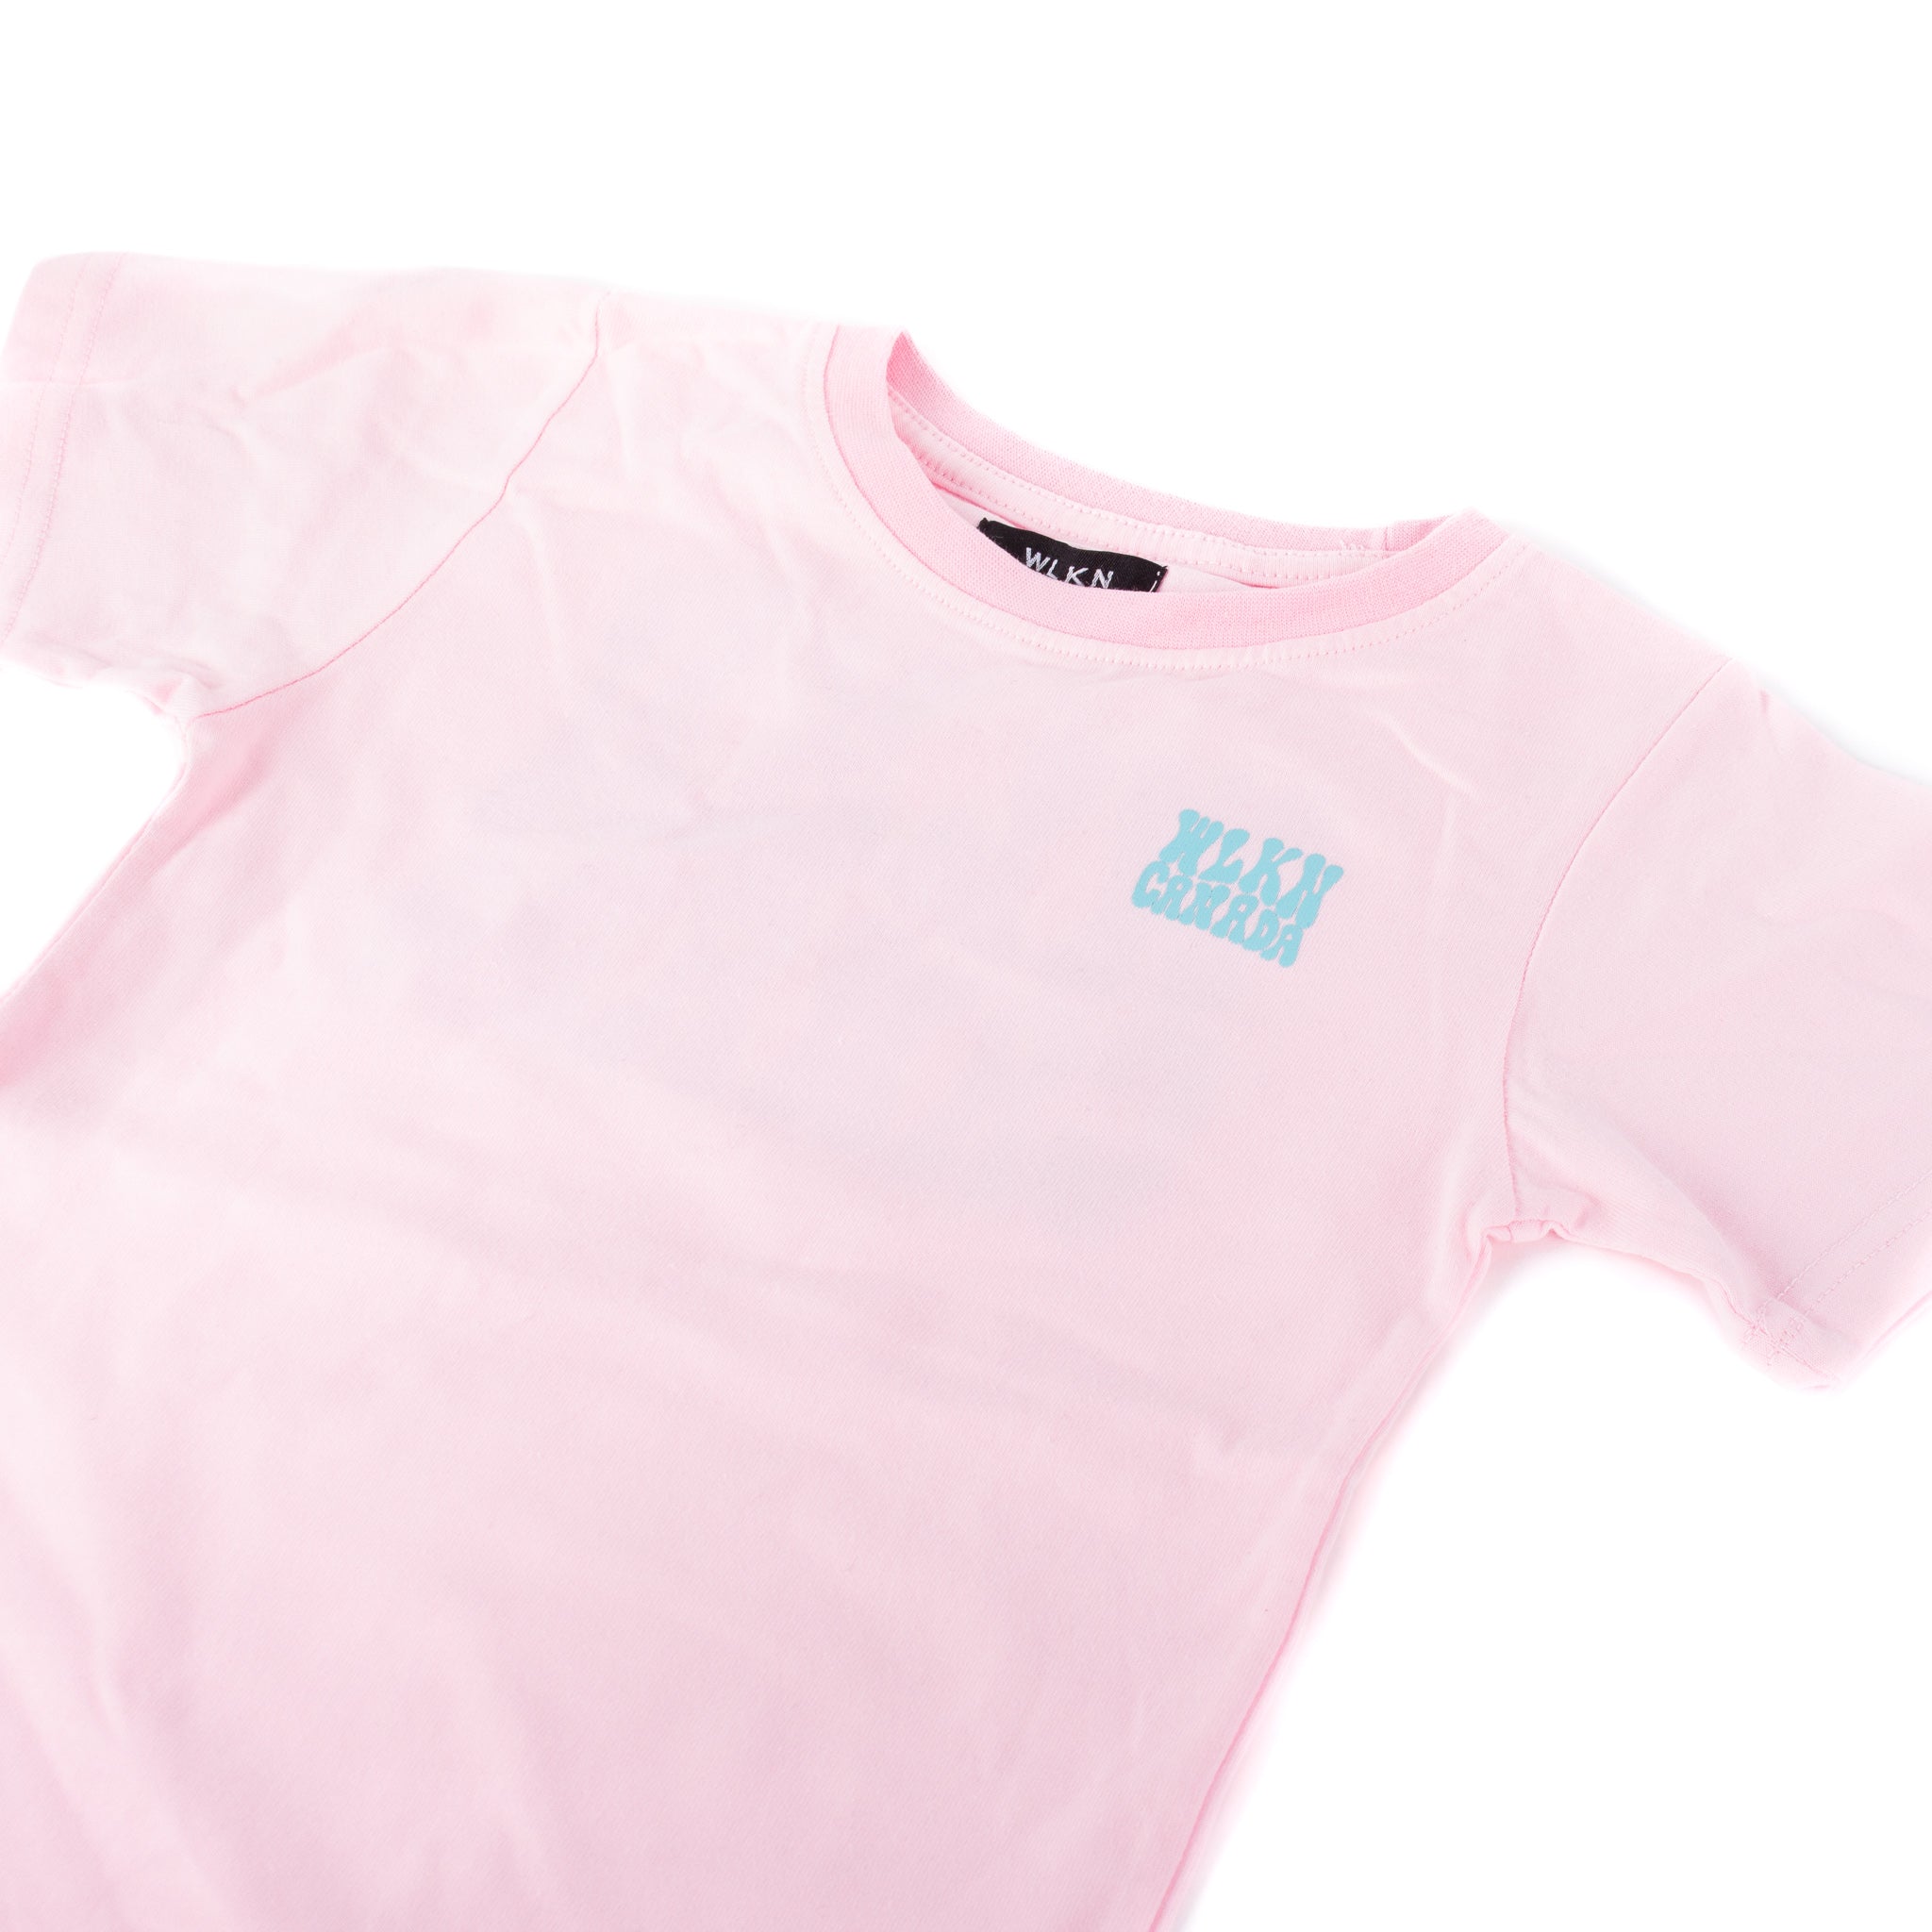 T shirt rose bonbon